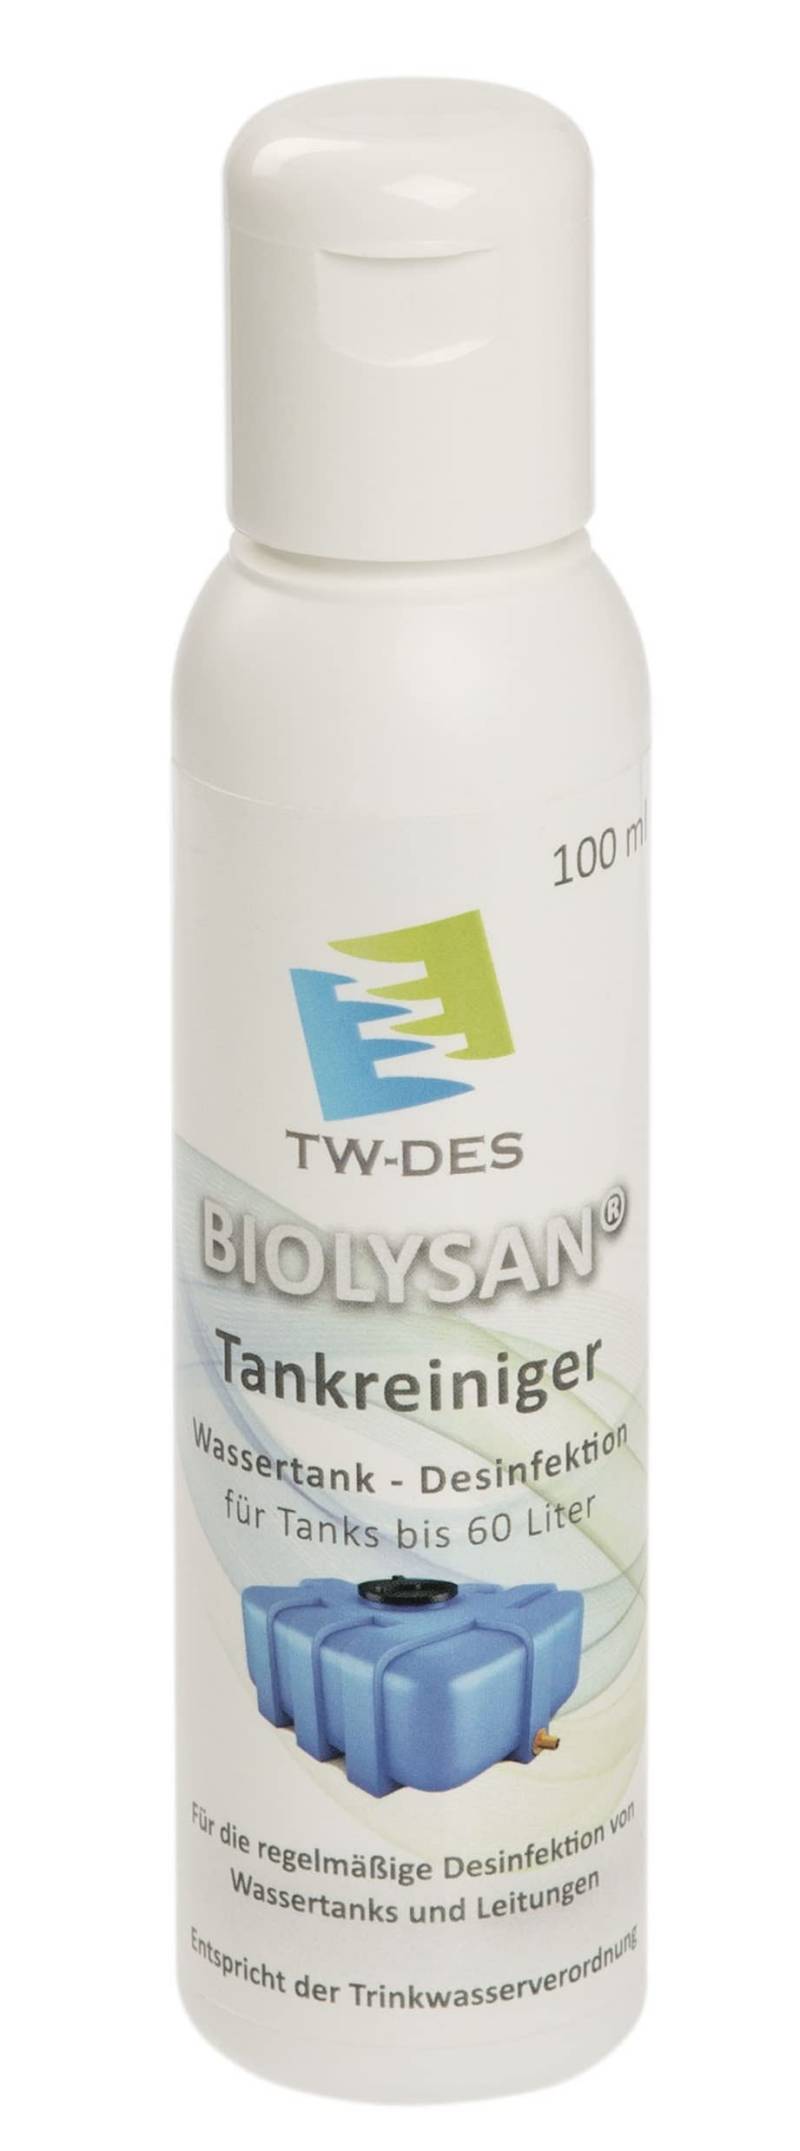 TW-DES BIOLYSAN Tankreiniger für Tank & Leitungsdesinfektion bis 60l Tanks, entspricht der Trinkwasserverordnung, für Wohnmobil Caravan Boot, Made in Germany von BIOLYSAN